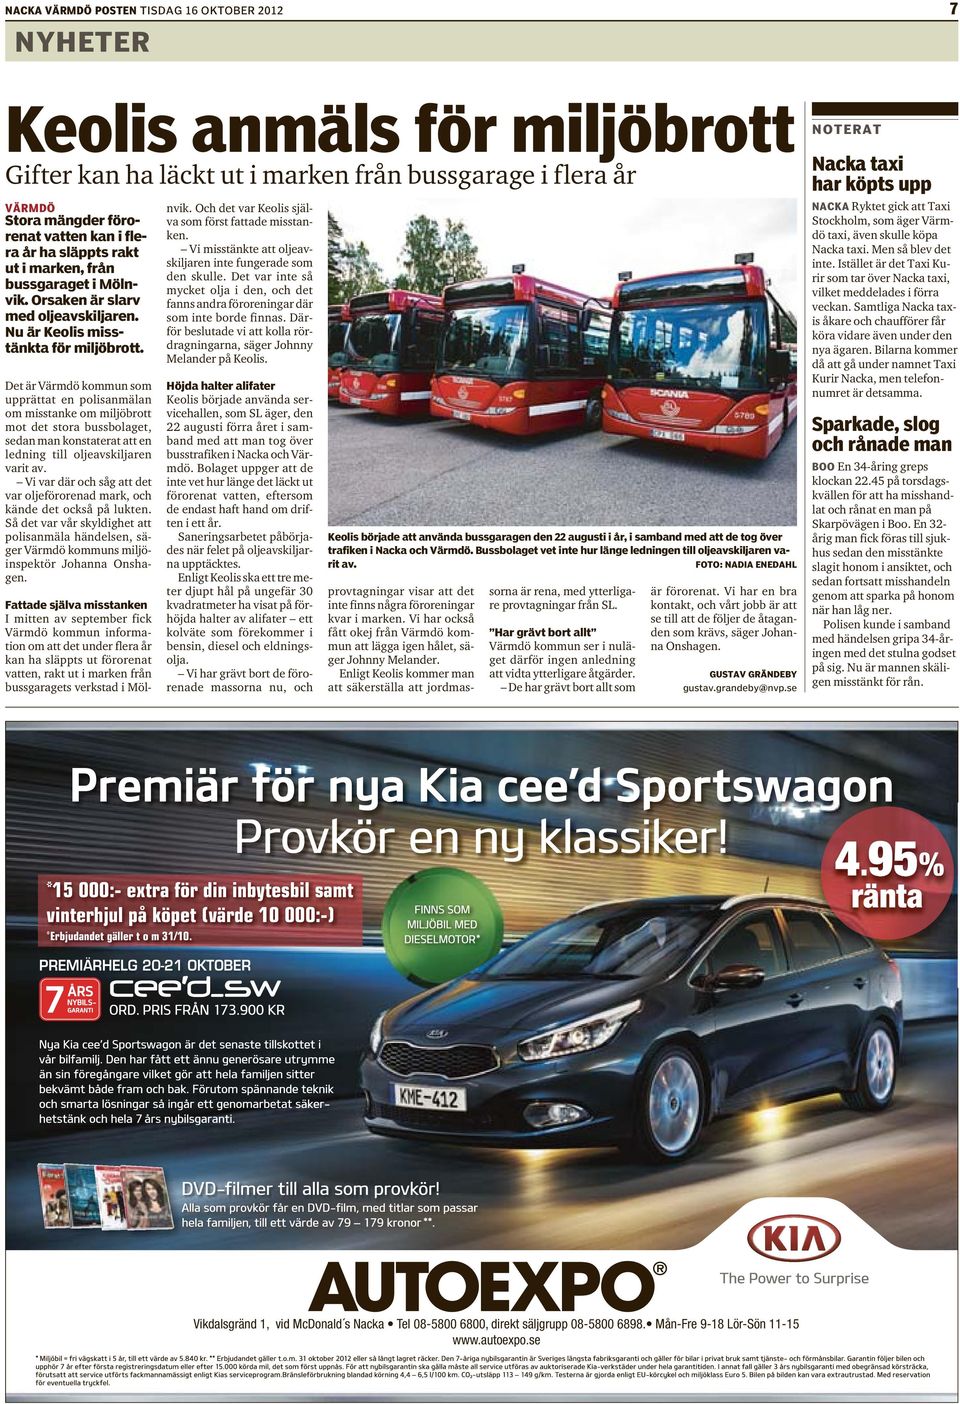 Det är Värmdö kommun som upprättat en polisanmälan om misstanke om miljöbrott mot det stora bussbolaget, sedan man konstaterat att en ledning till oljeavskiljaren varit av.